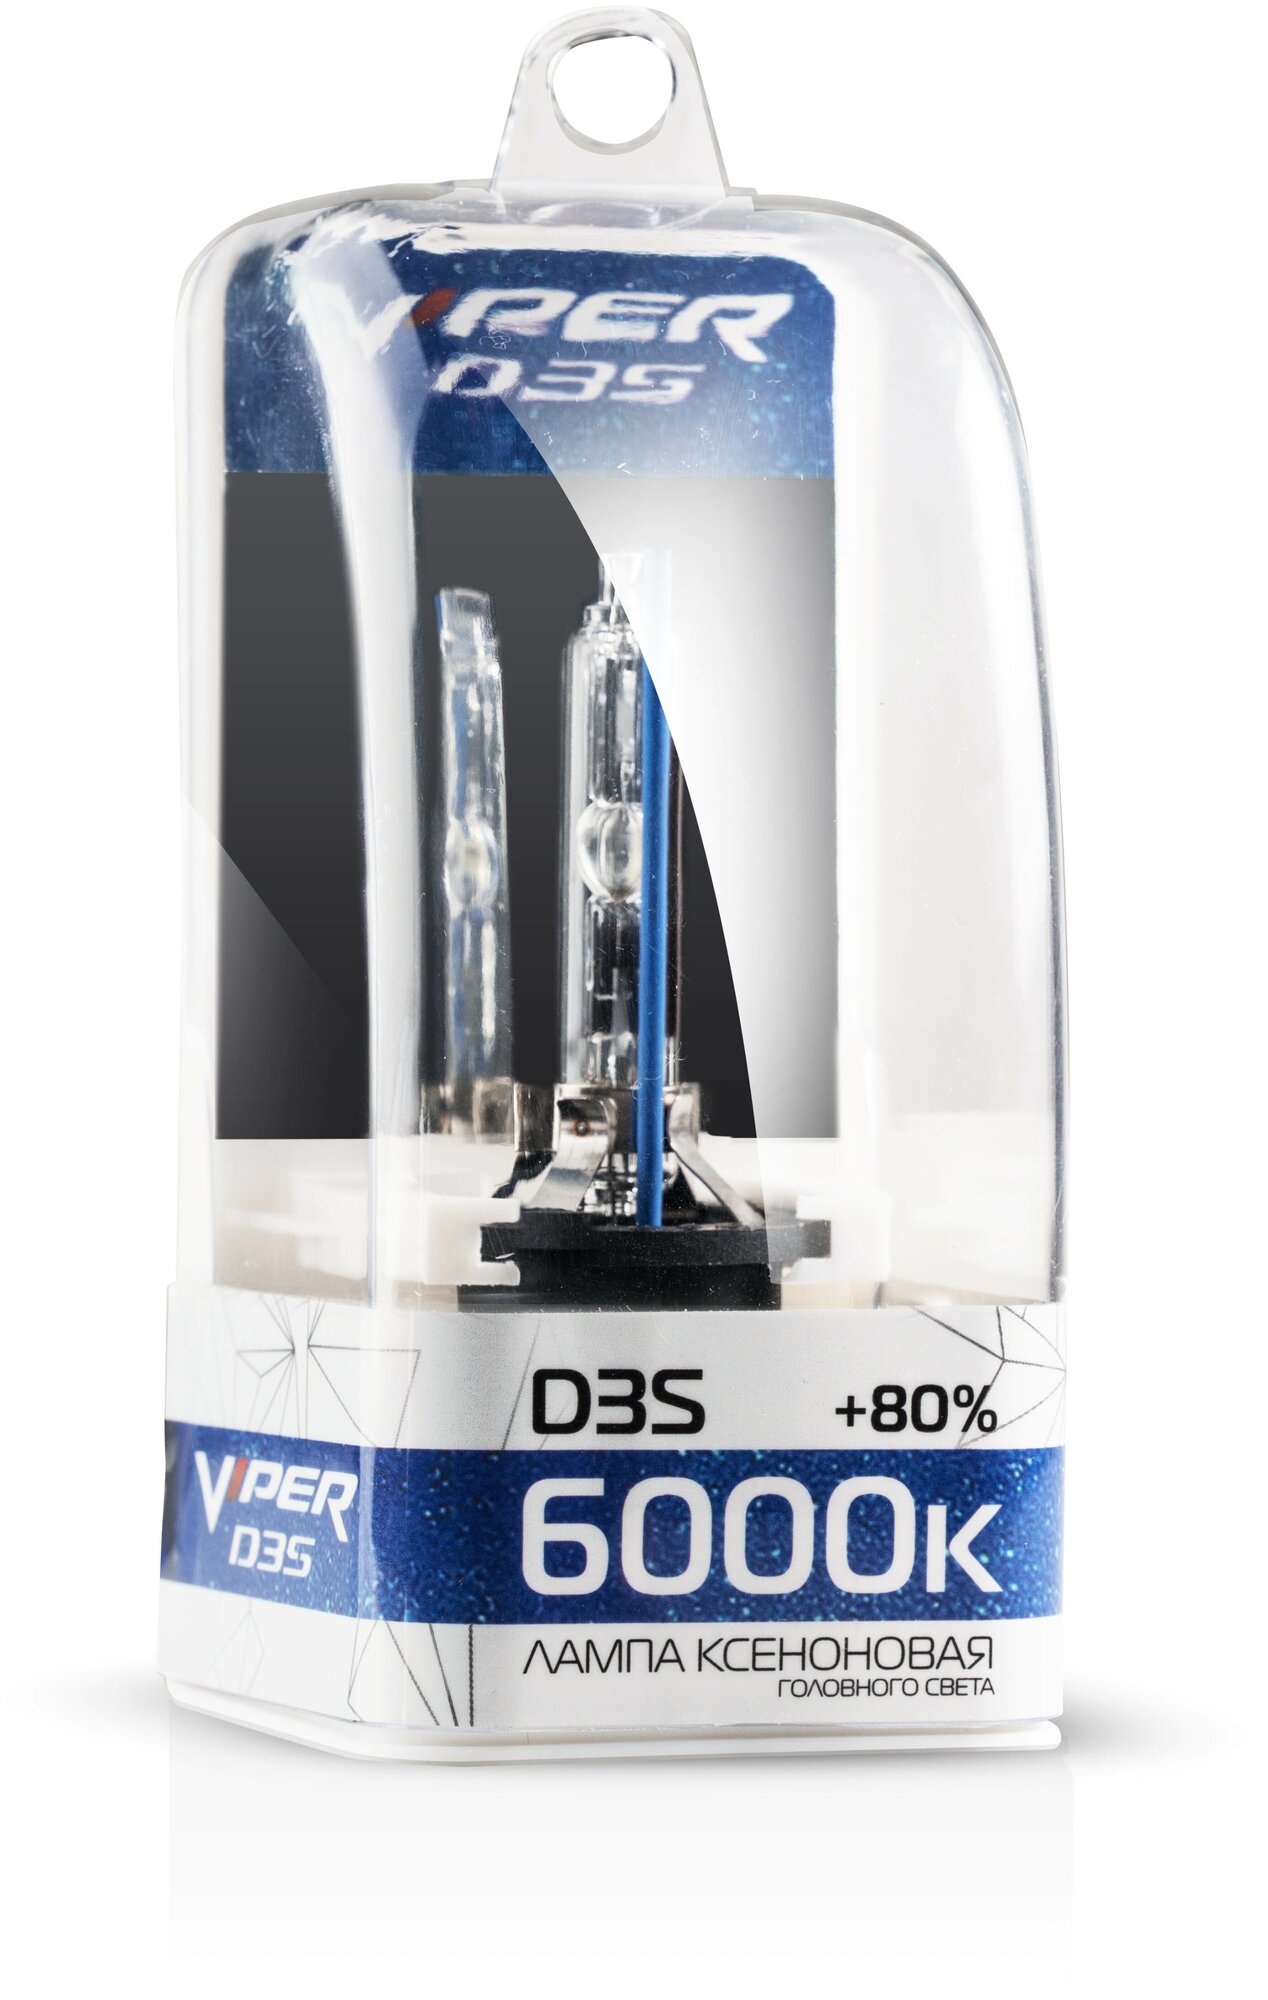 Лампа ксеноновая Viper D3S (6000K), 1шт.